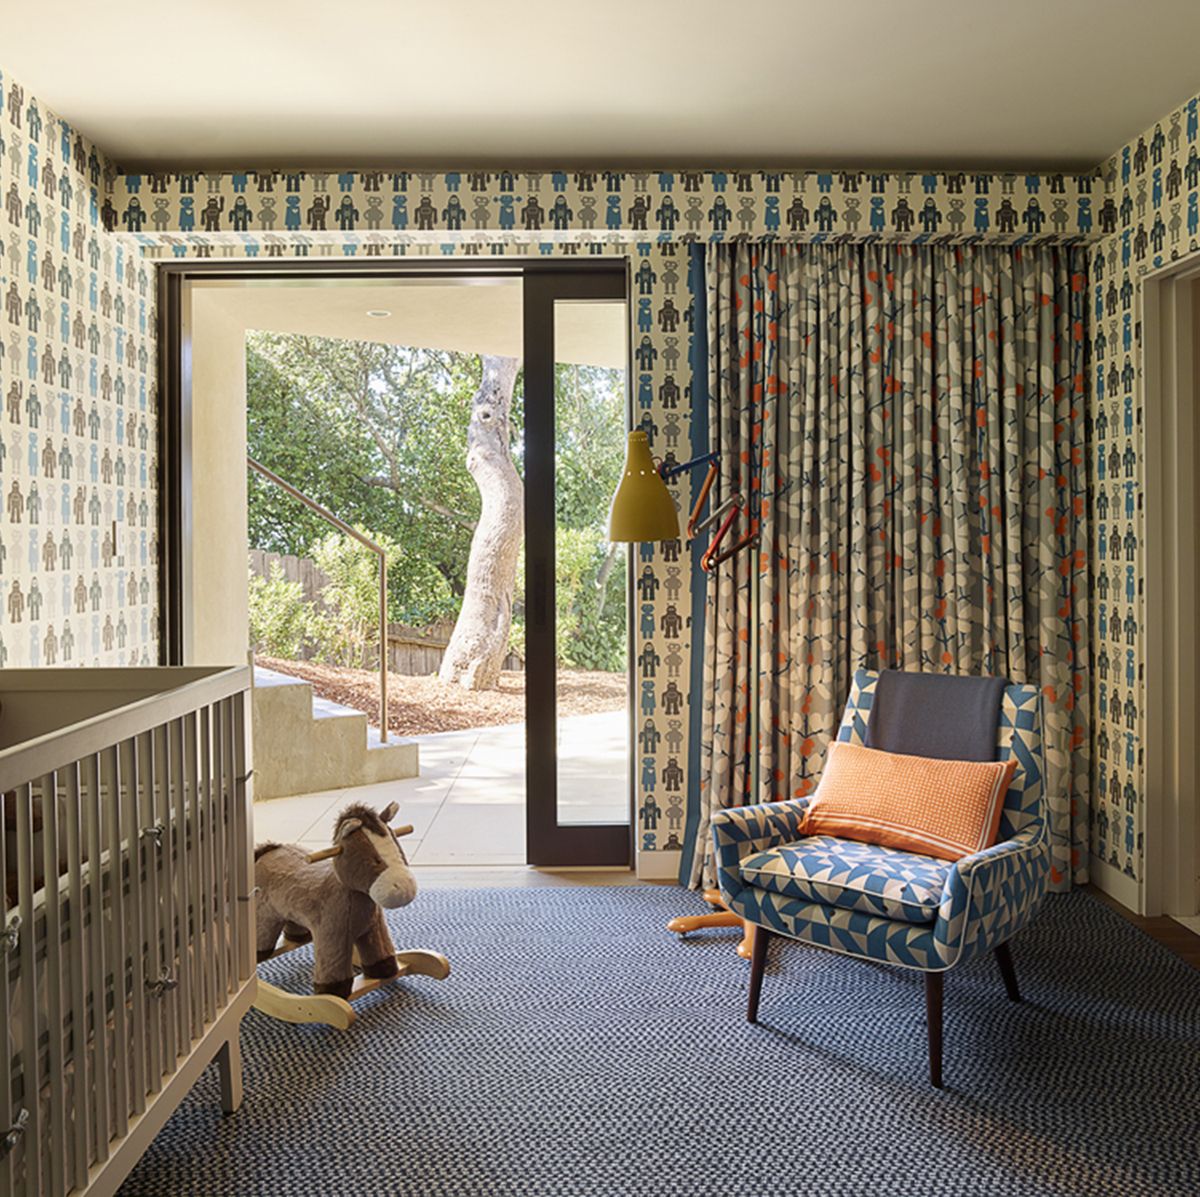 Decorar habitaciones infantiles con alfombras • AO tienda online alfombras